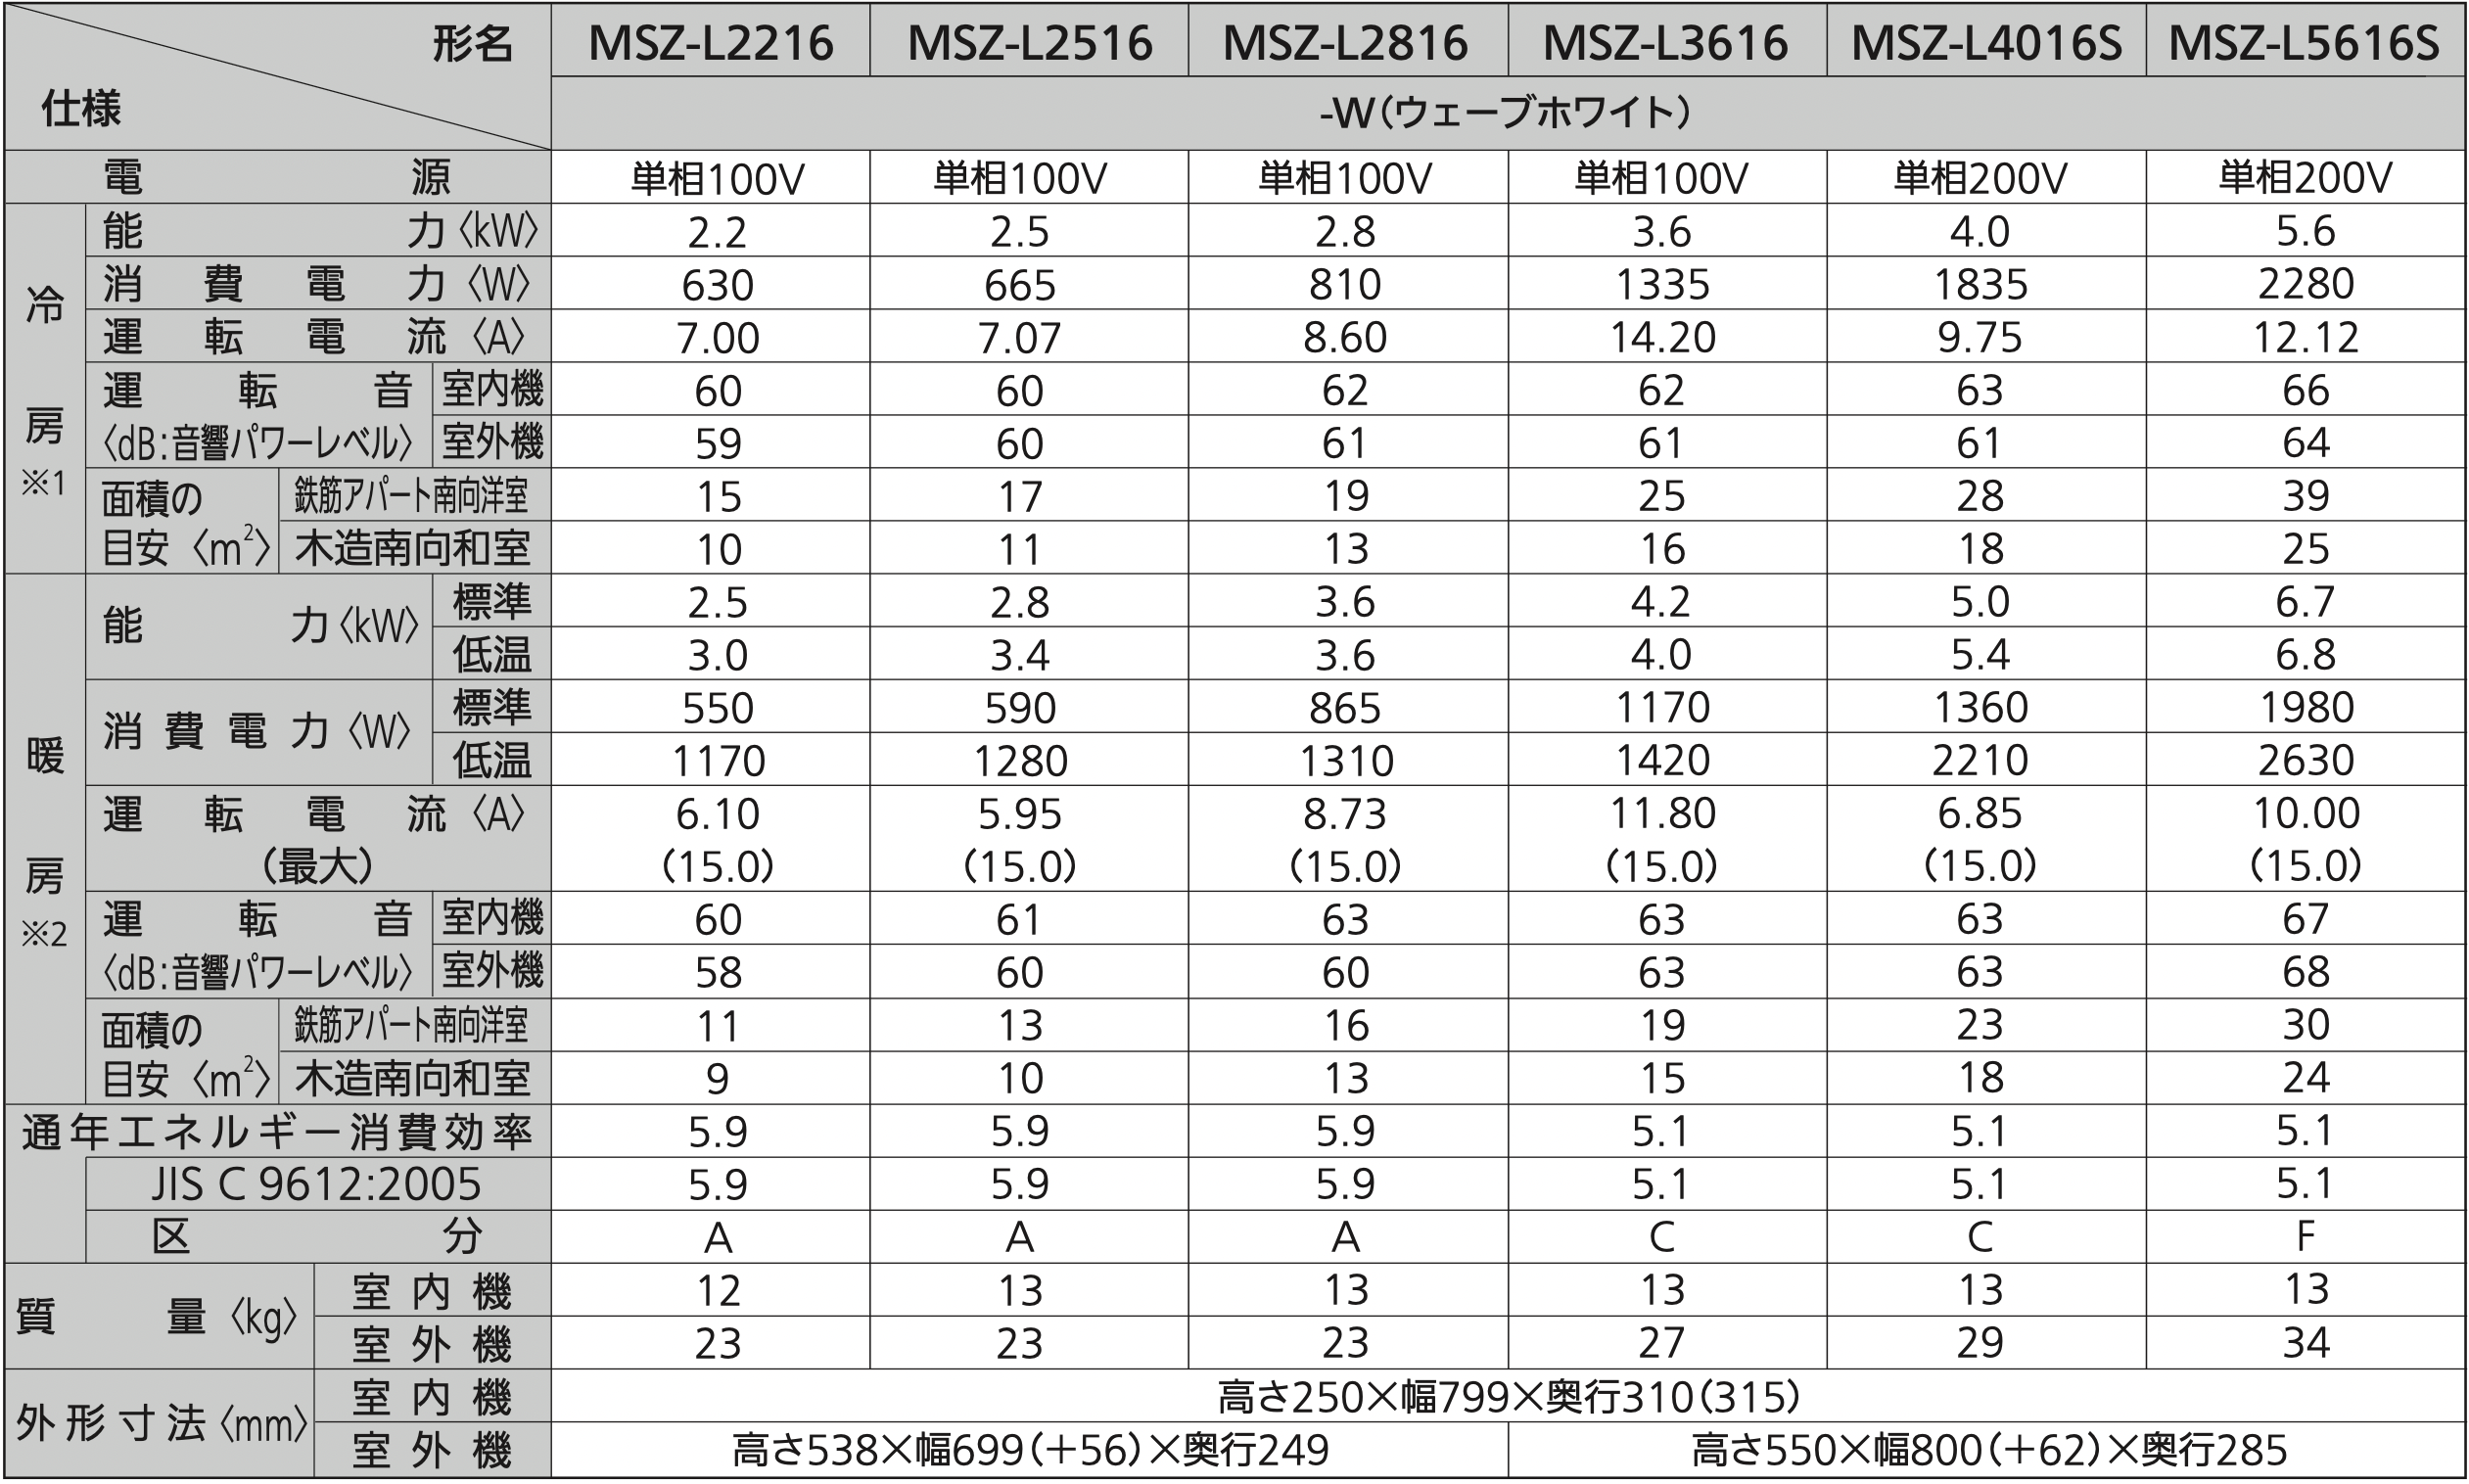 Thông số máy lạnh Mitsubishi Nội Địa Nhật năm 2016 Dòng L (MSZ-L2216-W; MSZ-L2516-W; MSZ-L2816-W; MSZ-L3616-W; MSZ-L4016S-W; MSZ-L5616S-W)